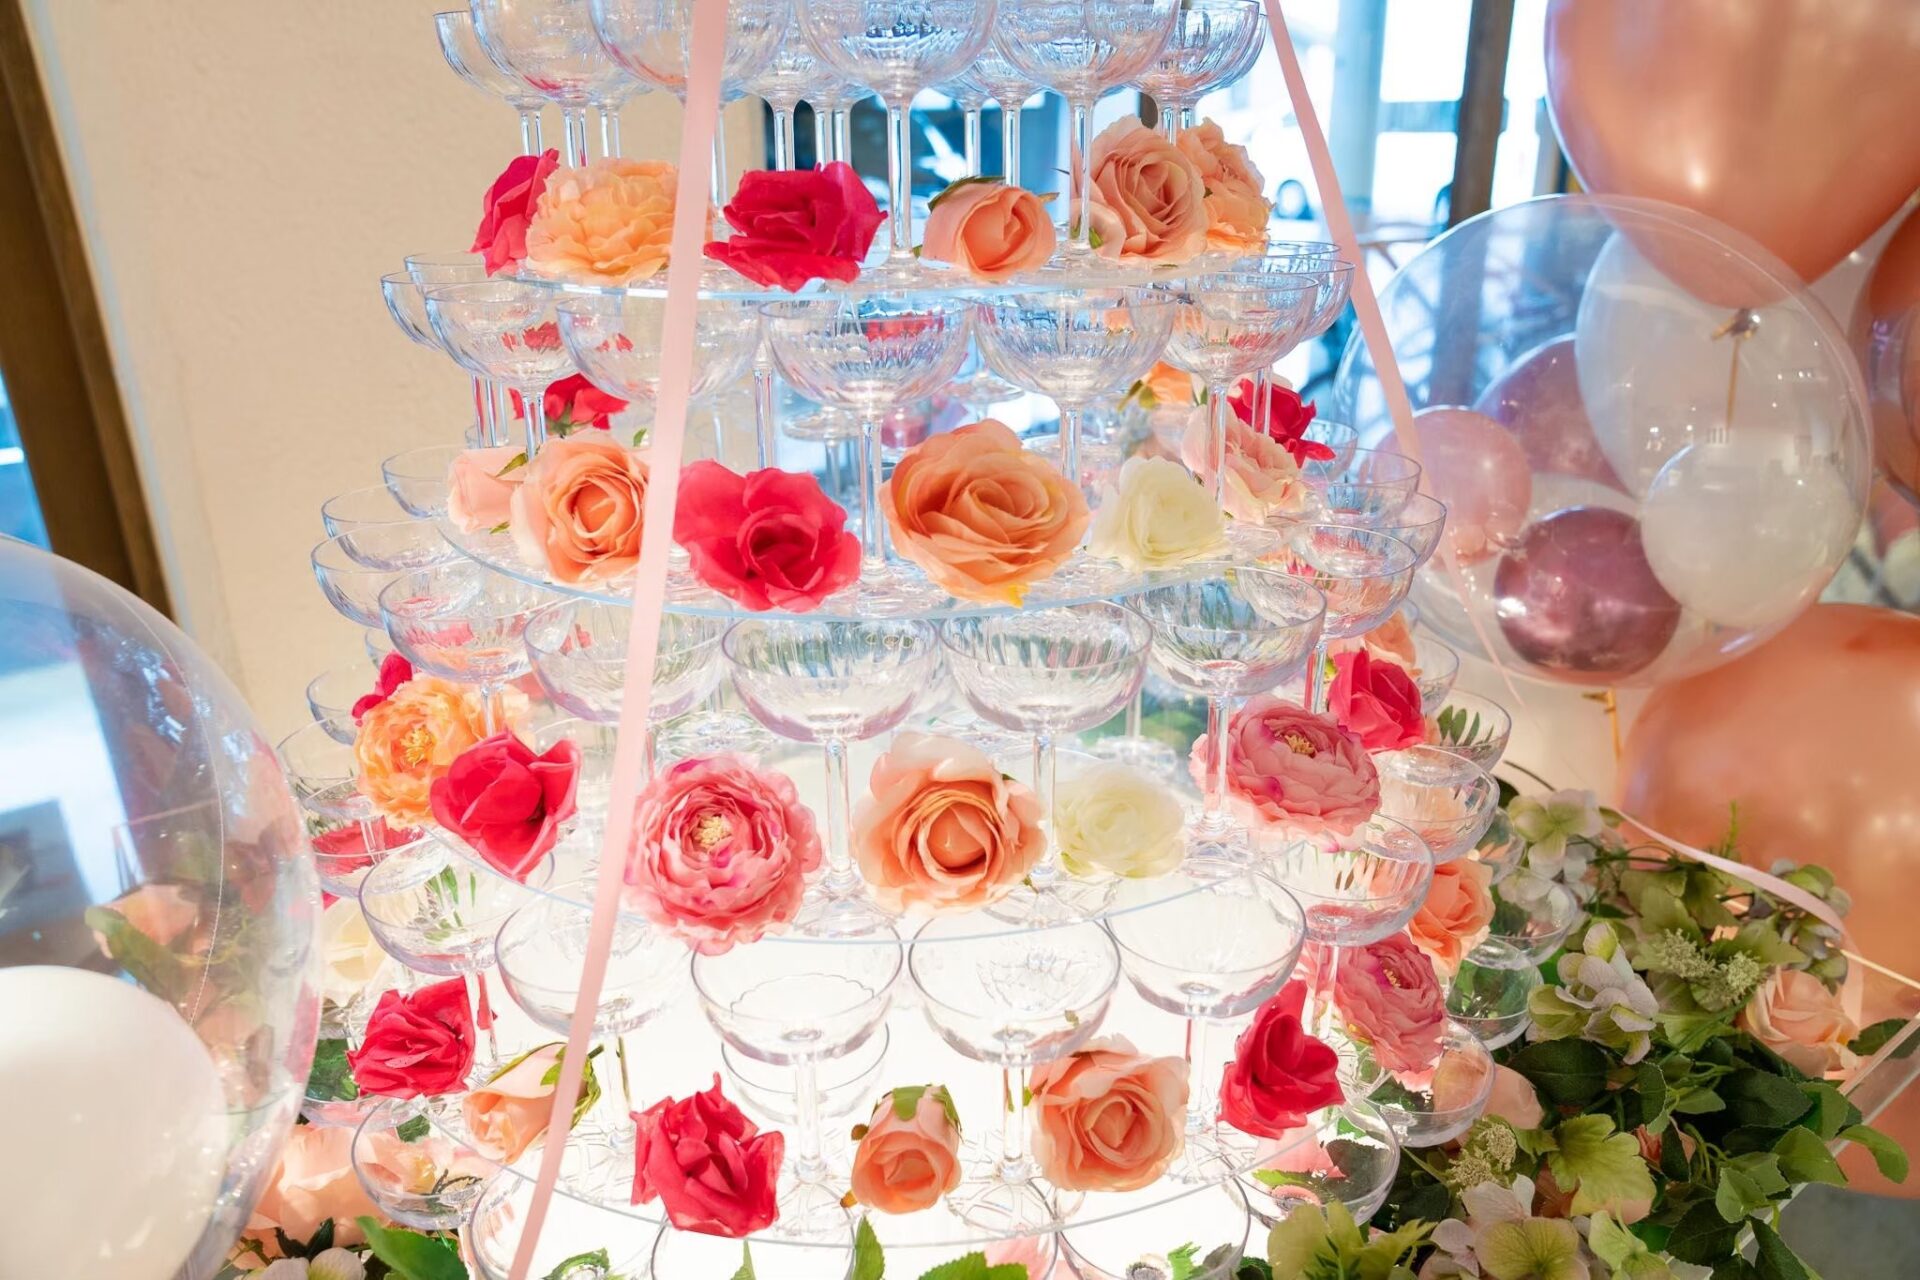 圓形香檳塔，每層都襯有鮮花和玻璃杯